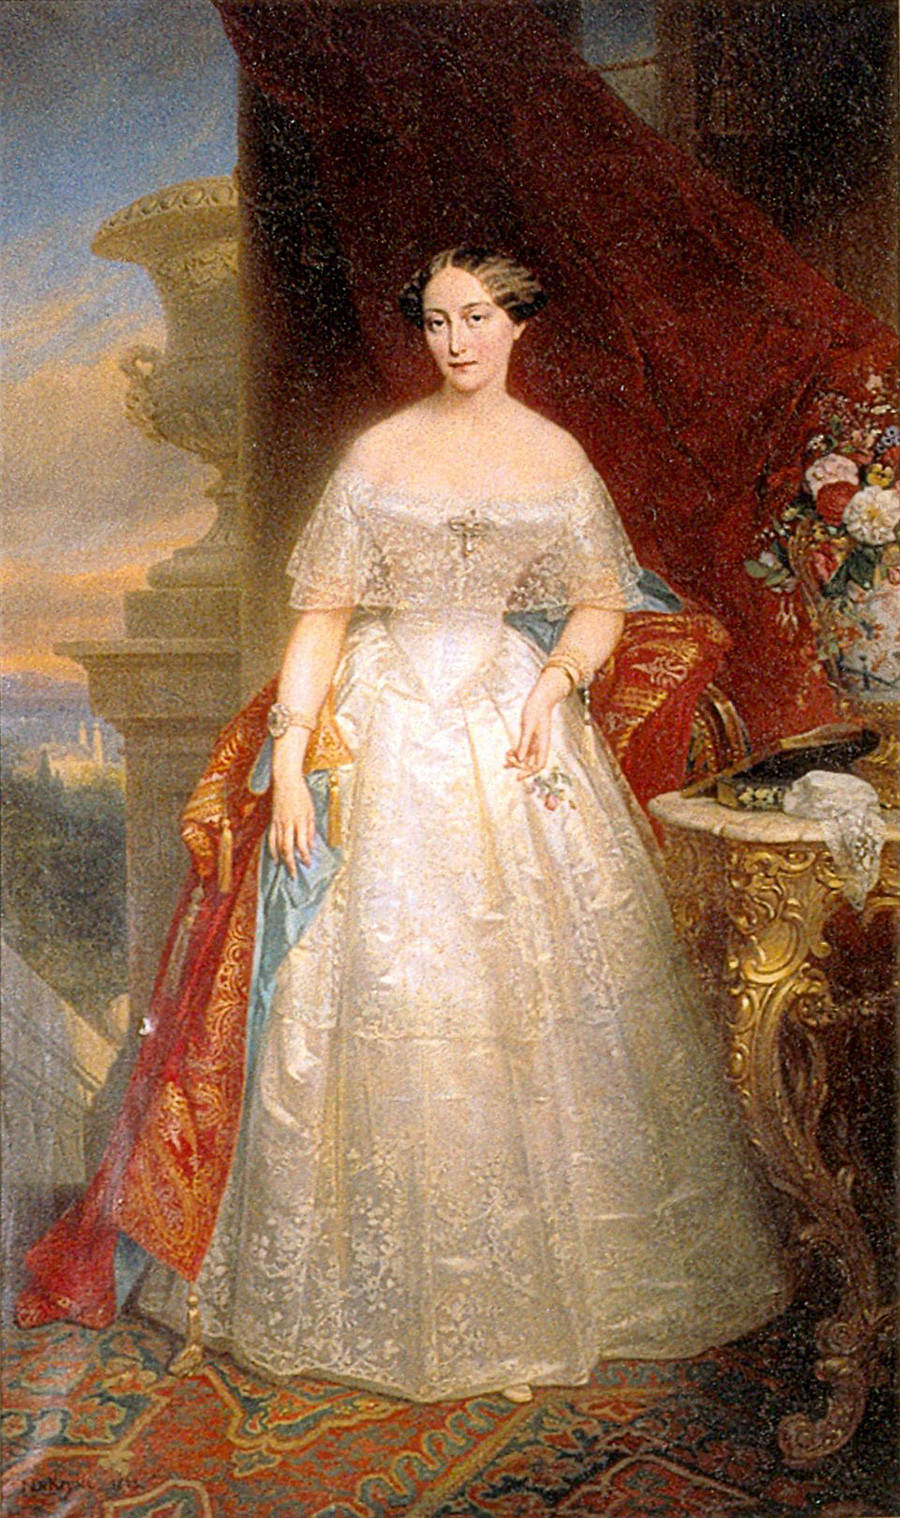 Ritratto di Olga di Russia (1822-1892), realizzato da Nicaise de Keyser